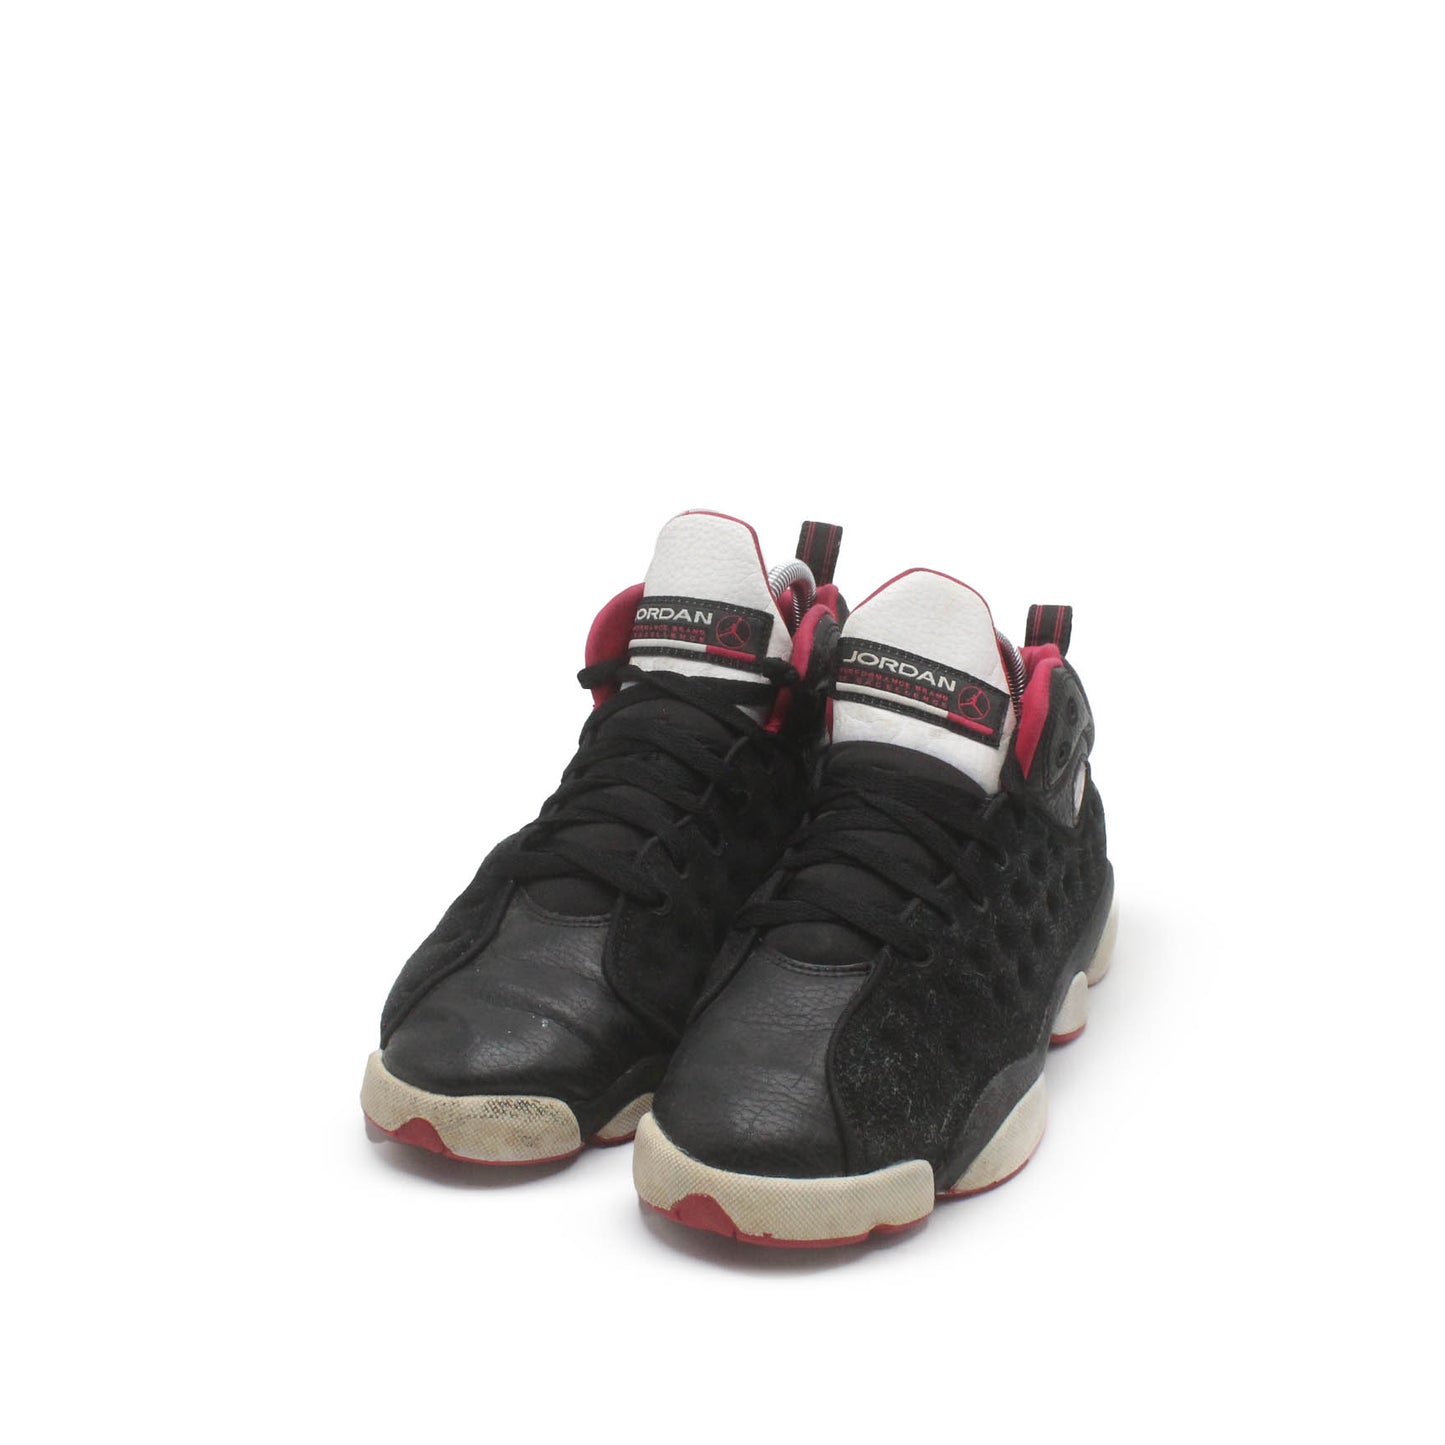 Jordan 13 Retro Low Bred Sneaker